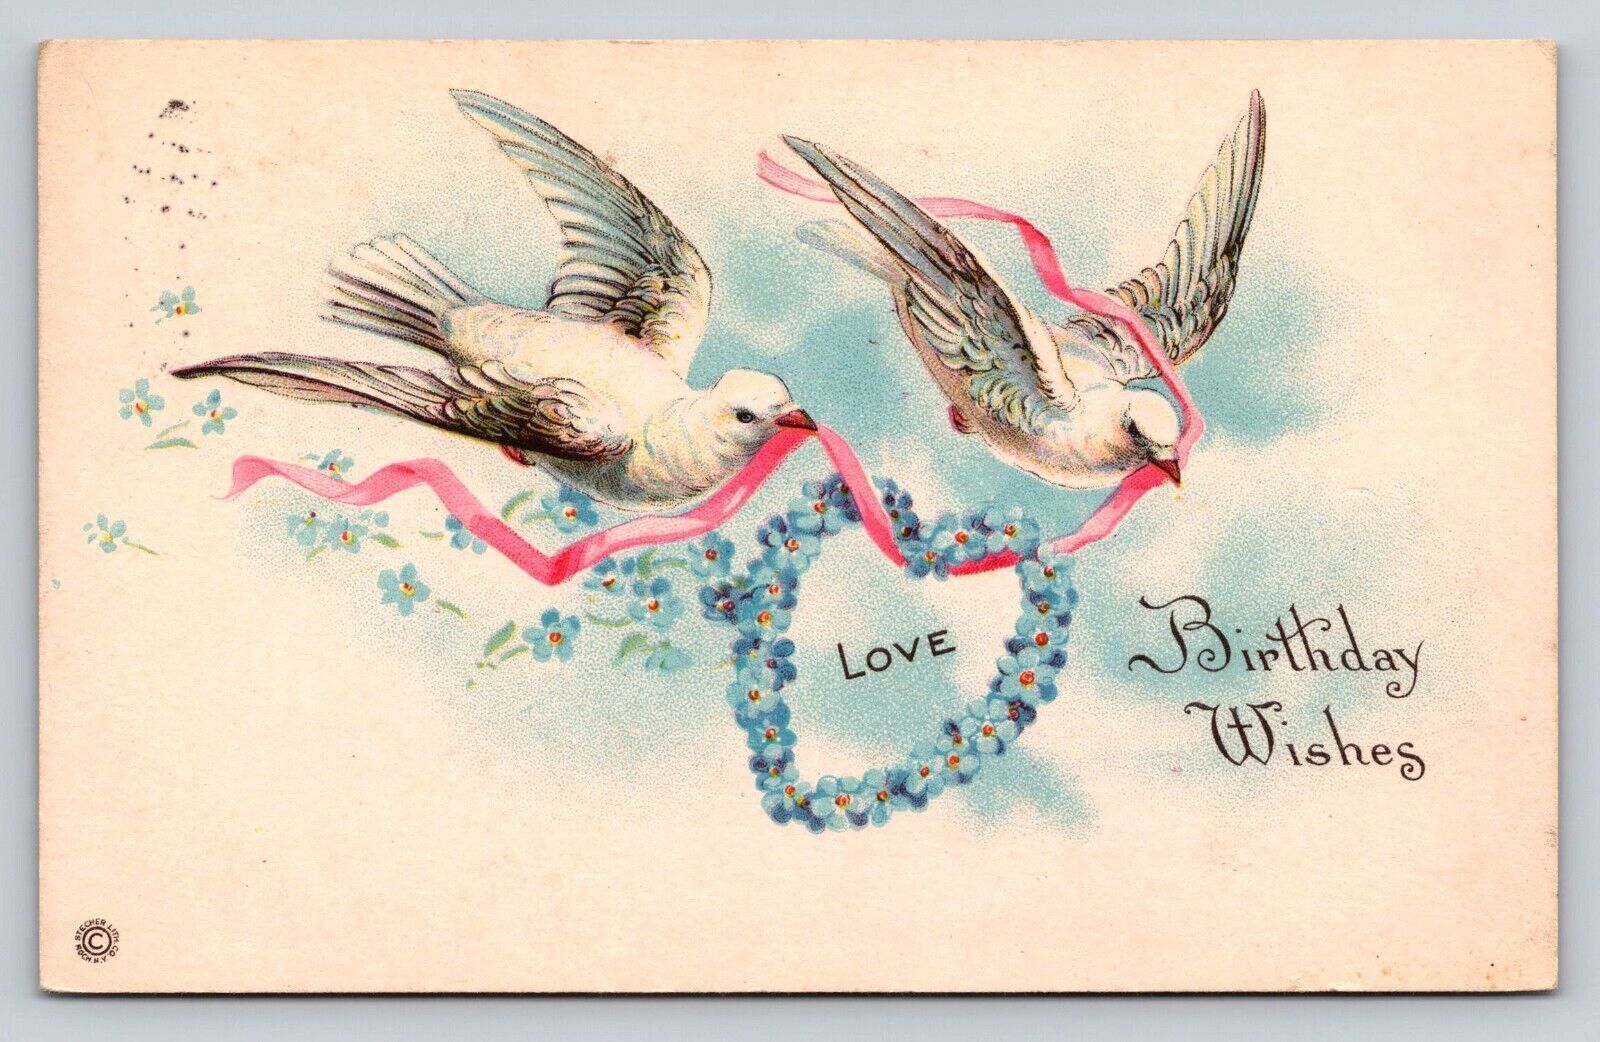 Posted 1924 Ben Franklin 2 Doves Delivering Pink Ribbon Blue Floral Heart Wreath